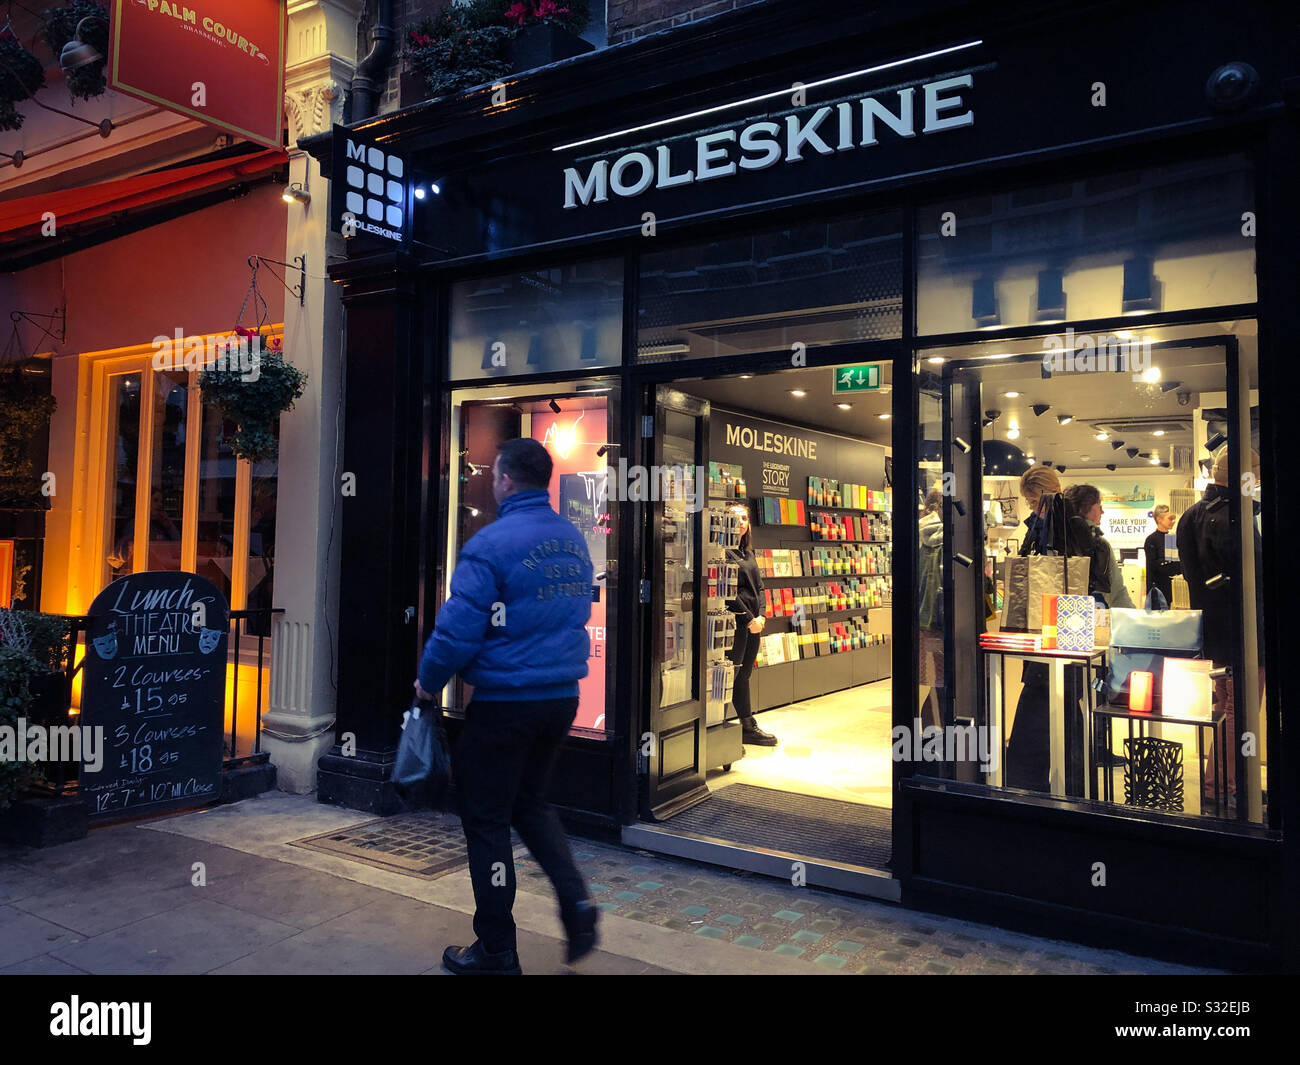 Moleskine, shop exterior, Covent Garden, London, England Stock Photo